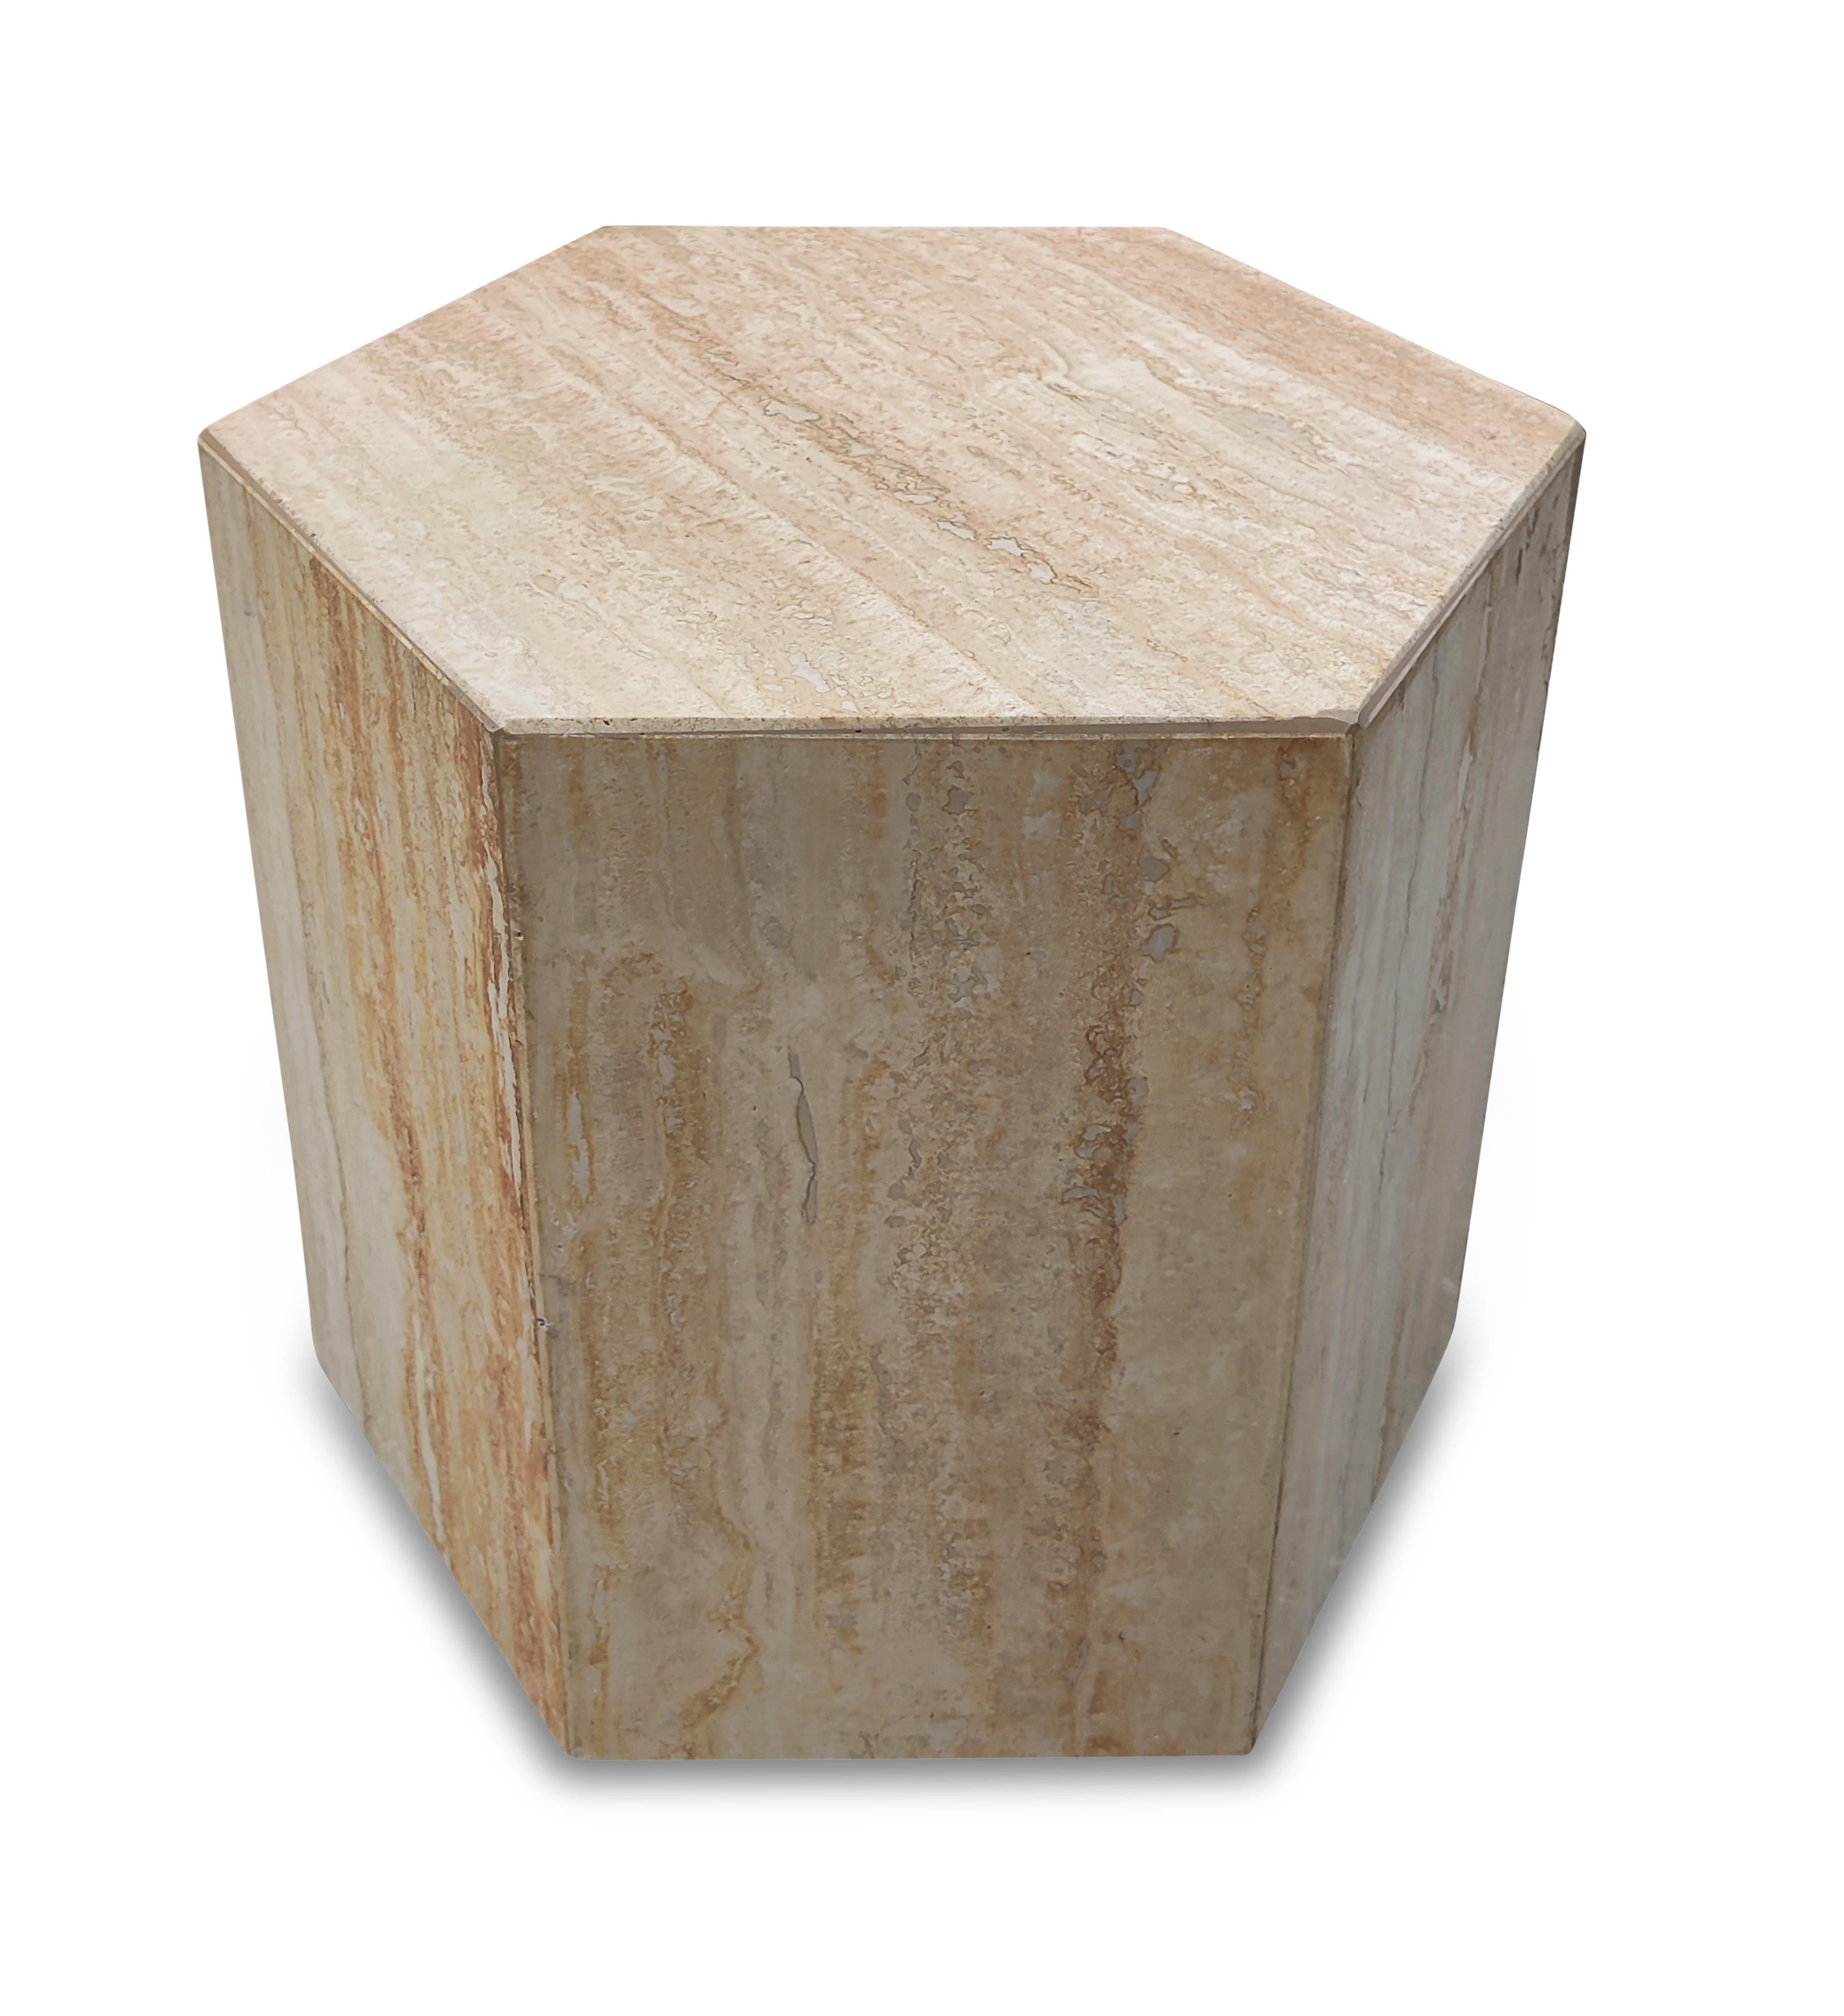 Table d'appoint ou piédestal haxagonal en marbre travertin italien. Le travertin poli est de couleur beige et crème avec de belles variations. Dans certaines zones, le grain prend une teinte rouge ou rouille, ce qui ajoute à sa beauté et à sa